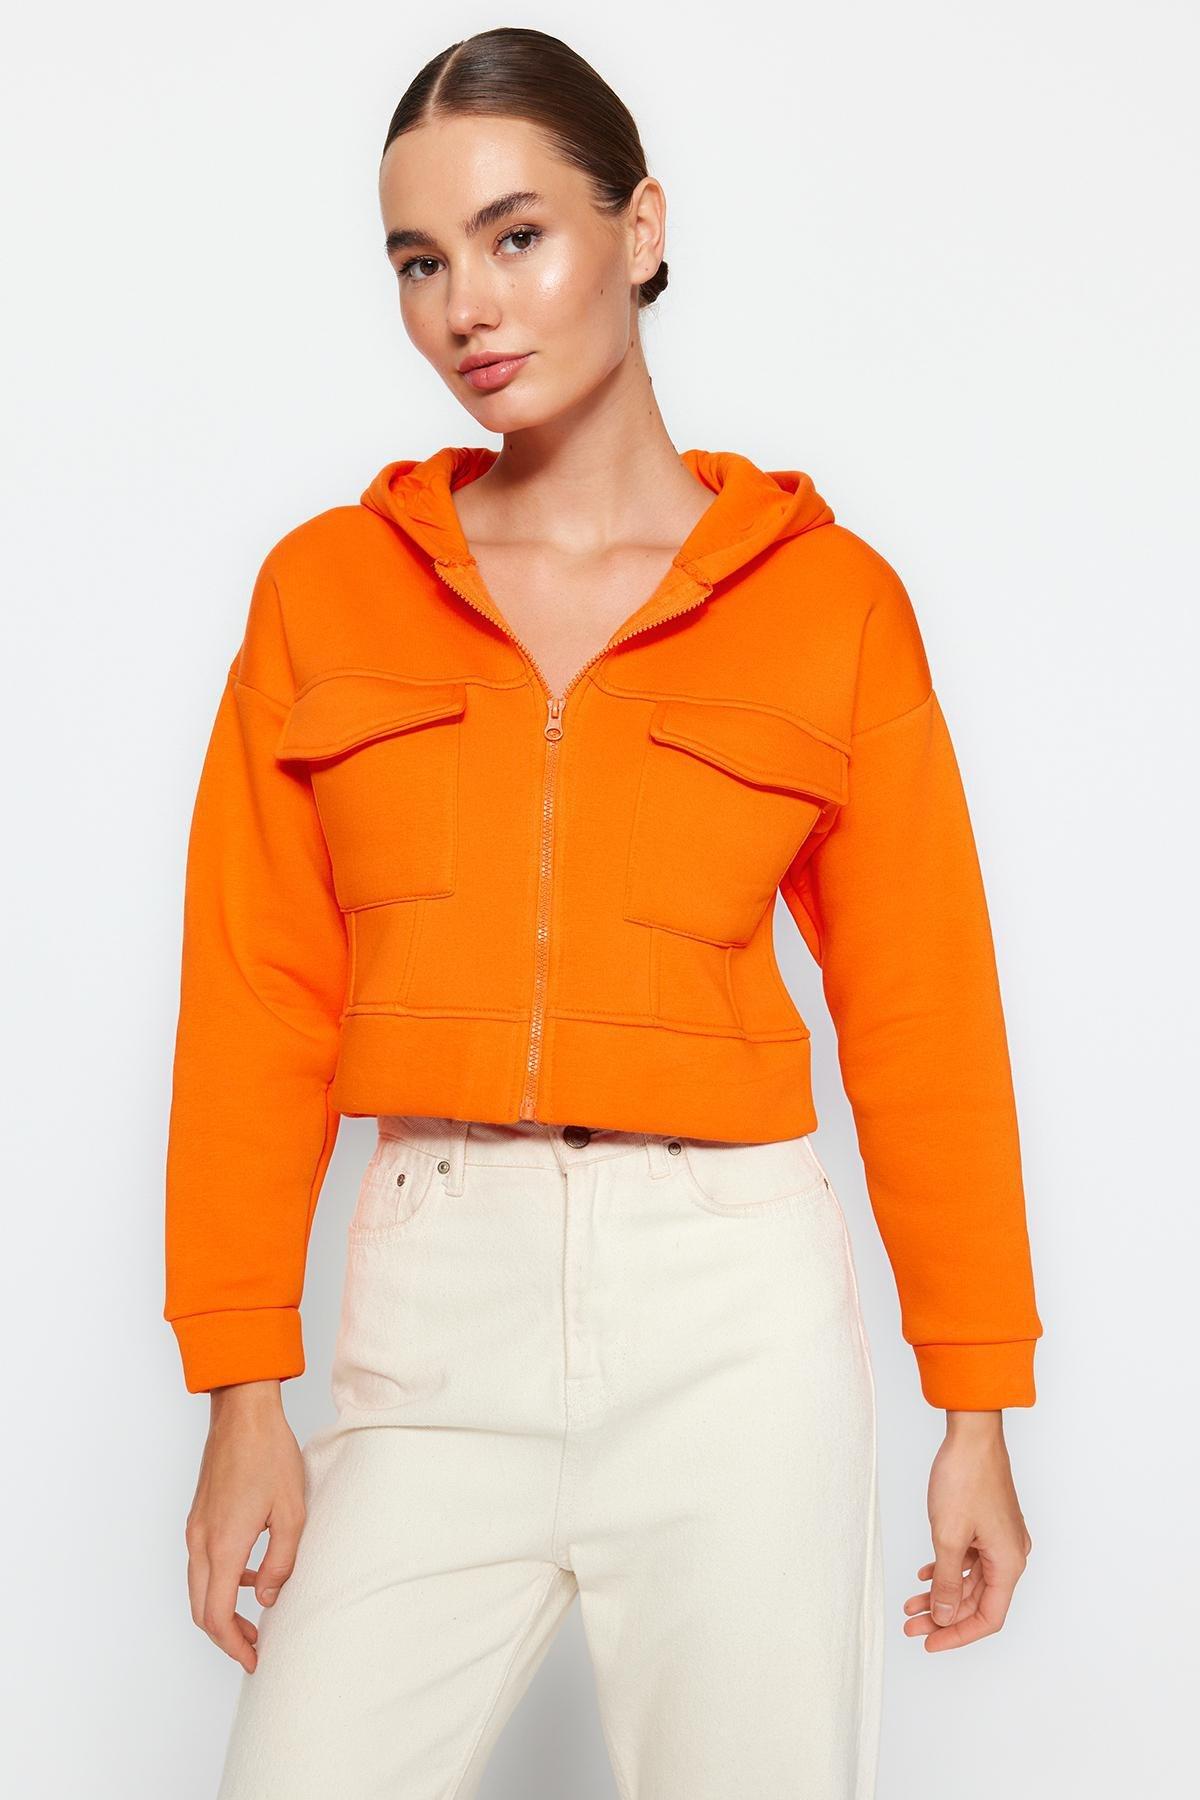 Trendyol - Orange Relaxed Detailed Hoodie Knitted Sweatshirt<br>